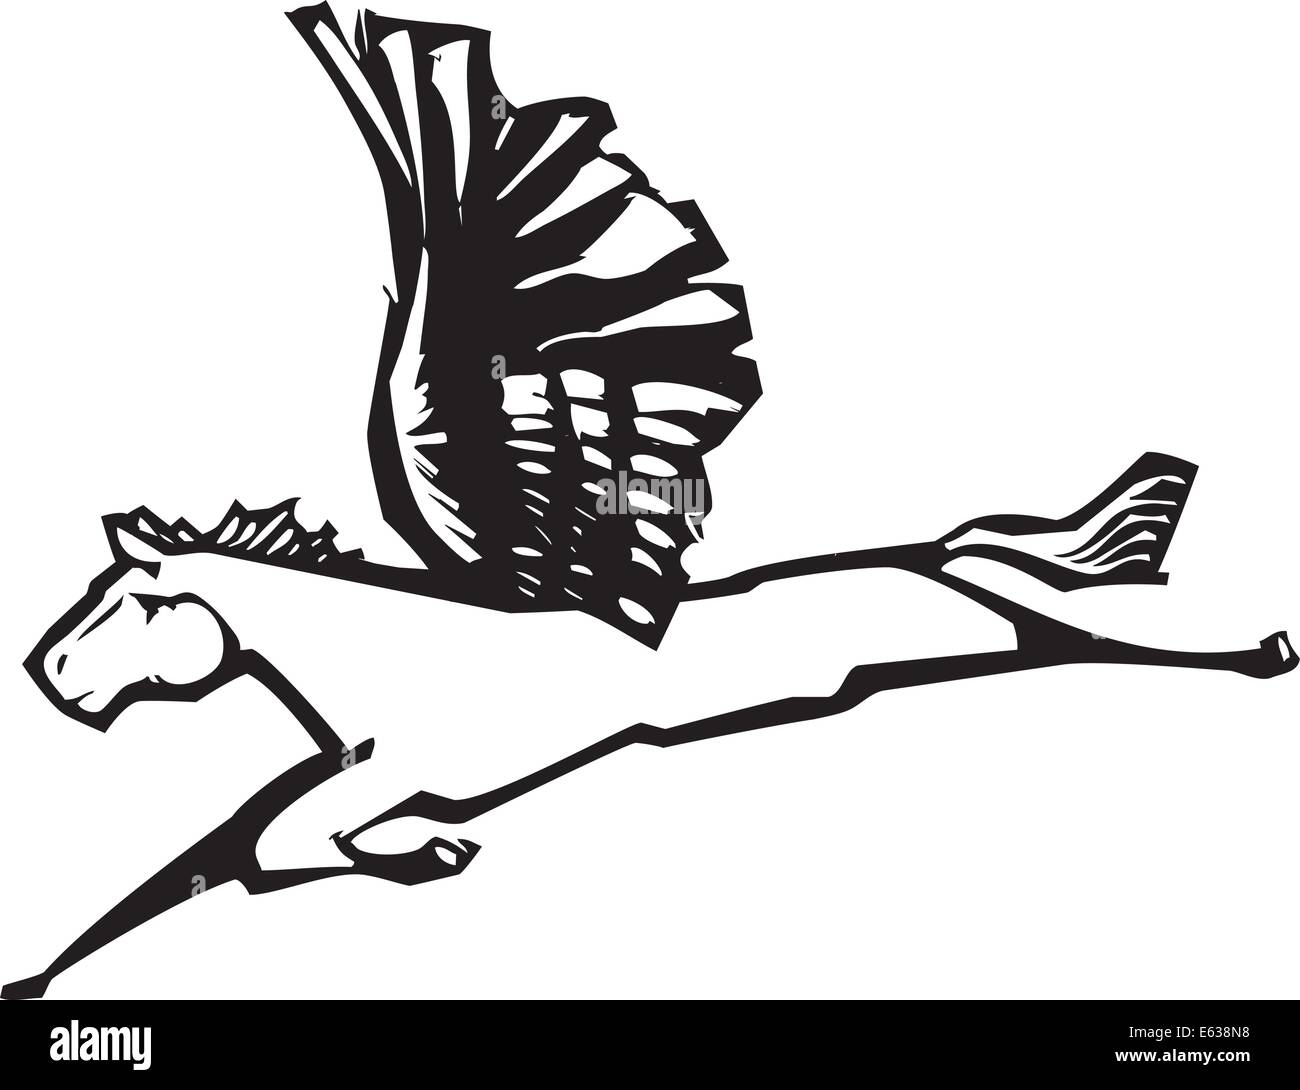 Holzschnitt-Stil Bild des geflügelten Pegasus aus den griechischen Mythen Stock Vektor